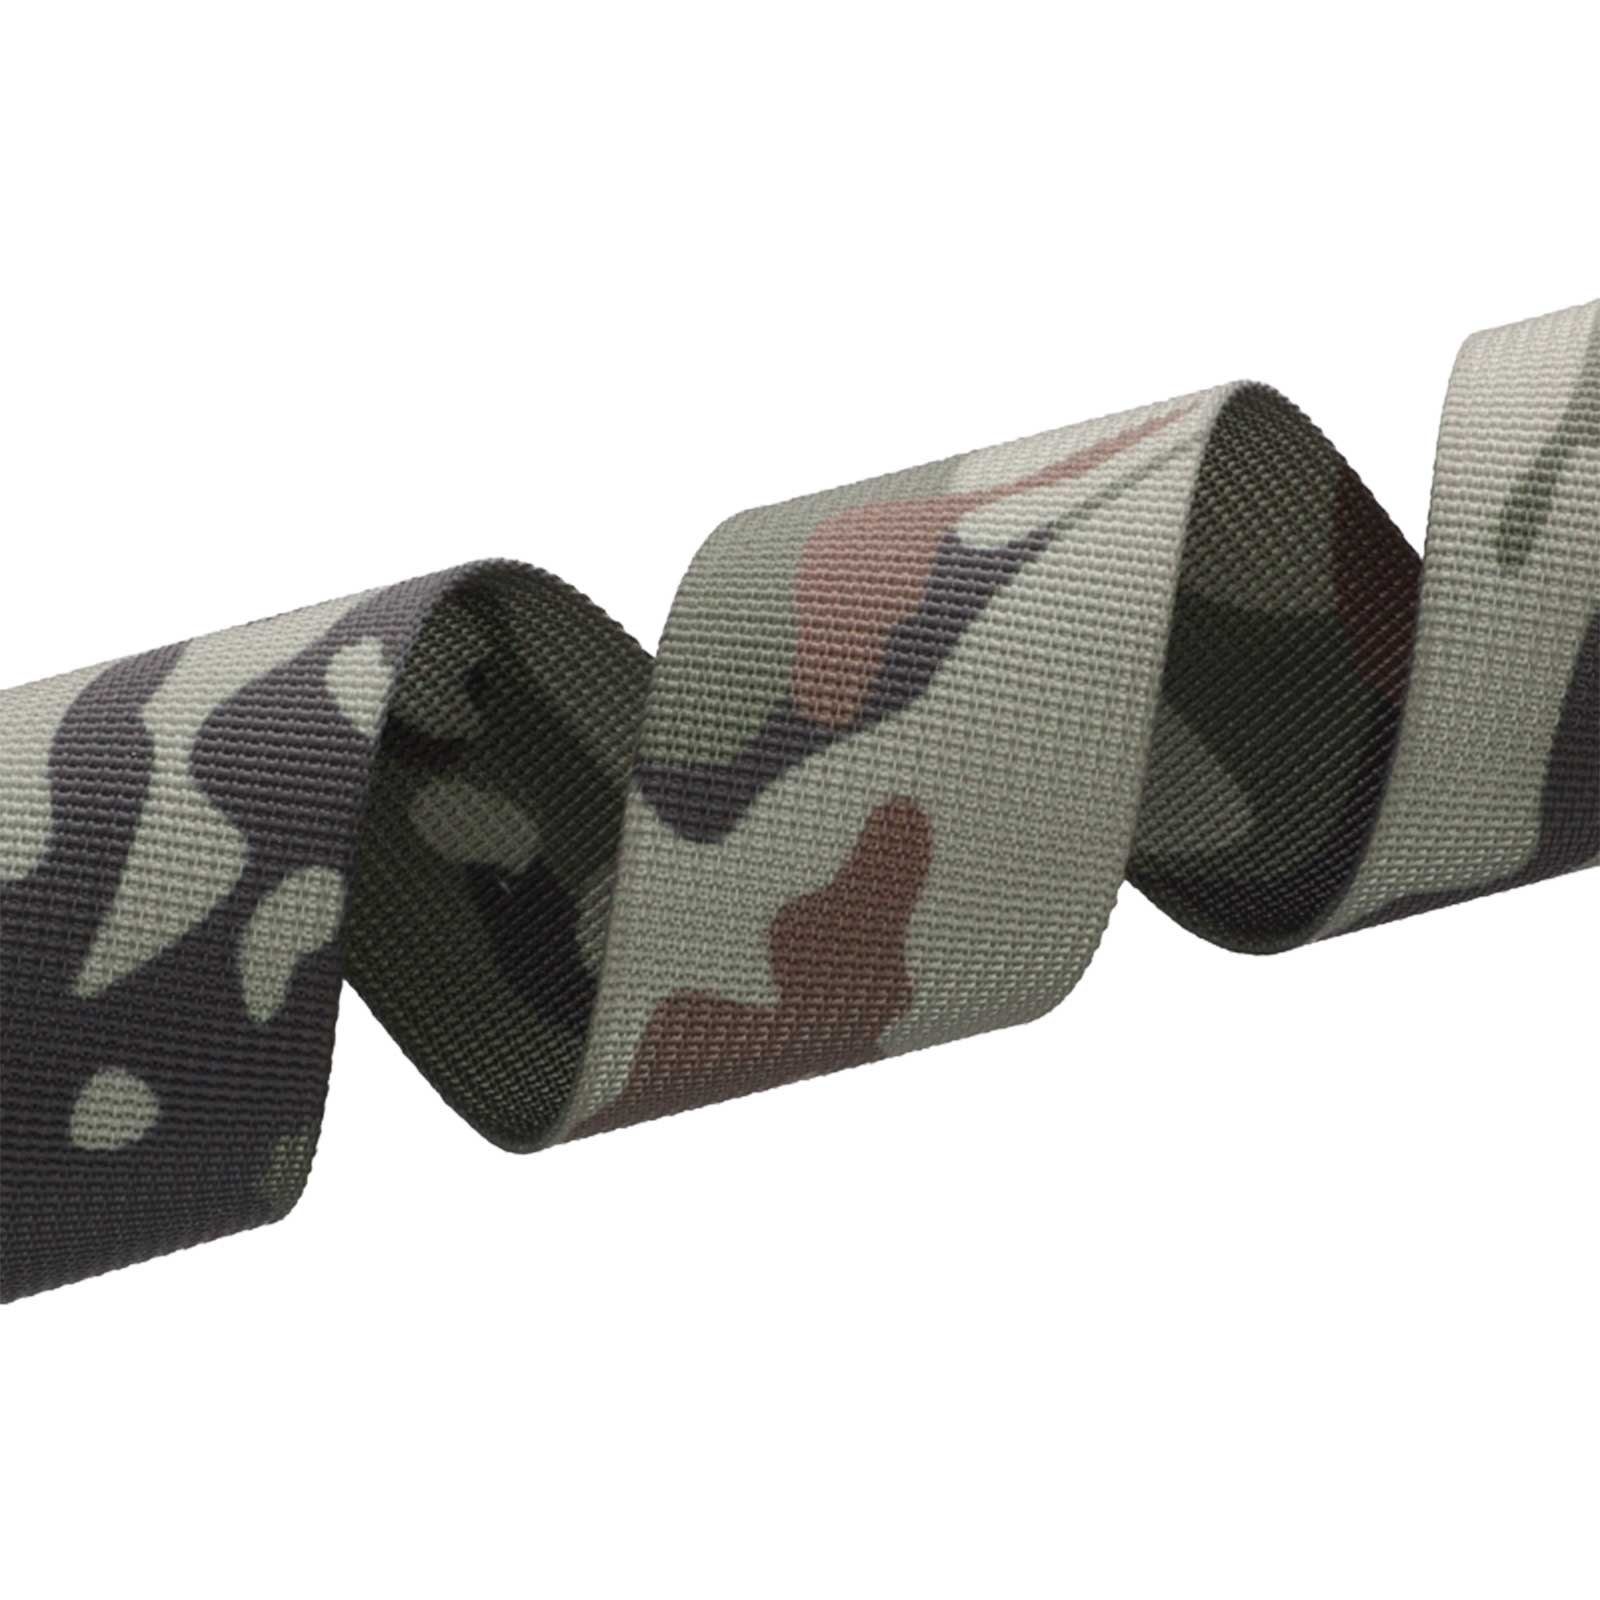 Gurtband Design camouflage Tarnmuster dark im Rollladengurt, maDDma 1m